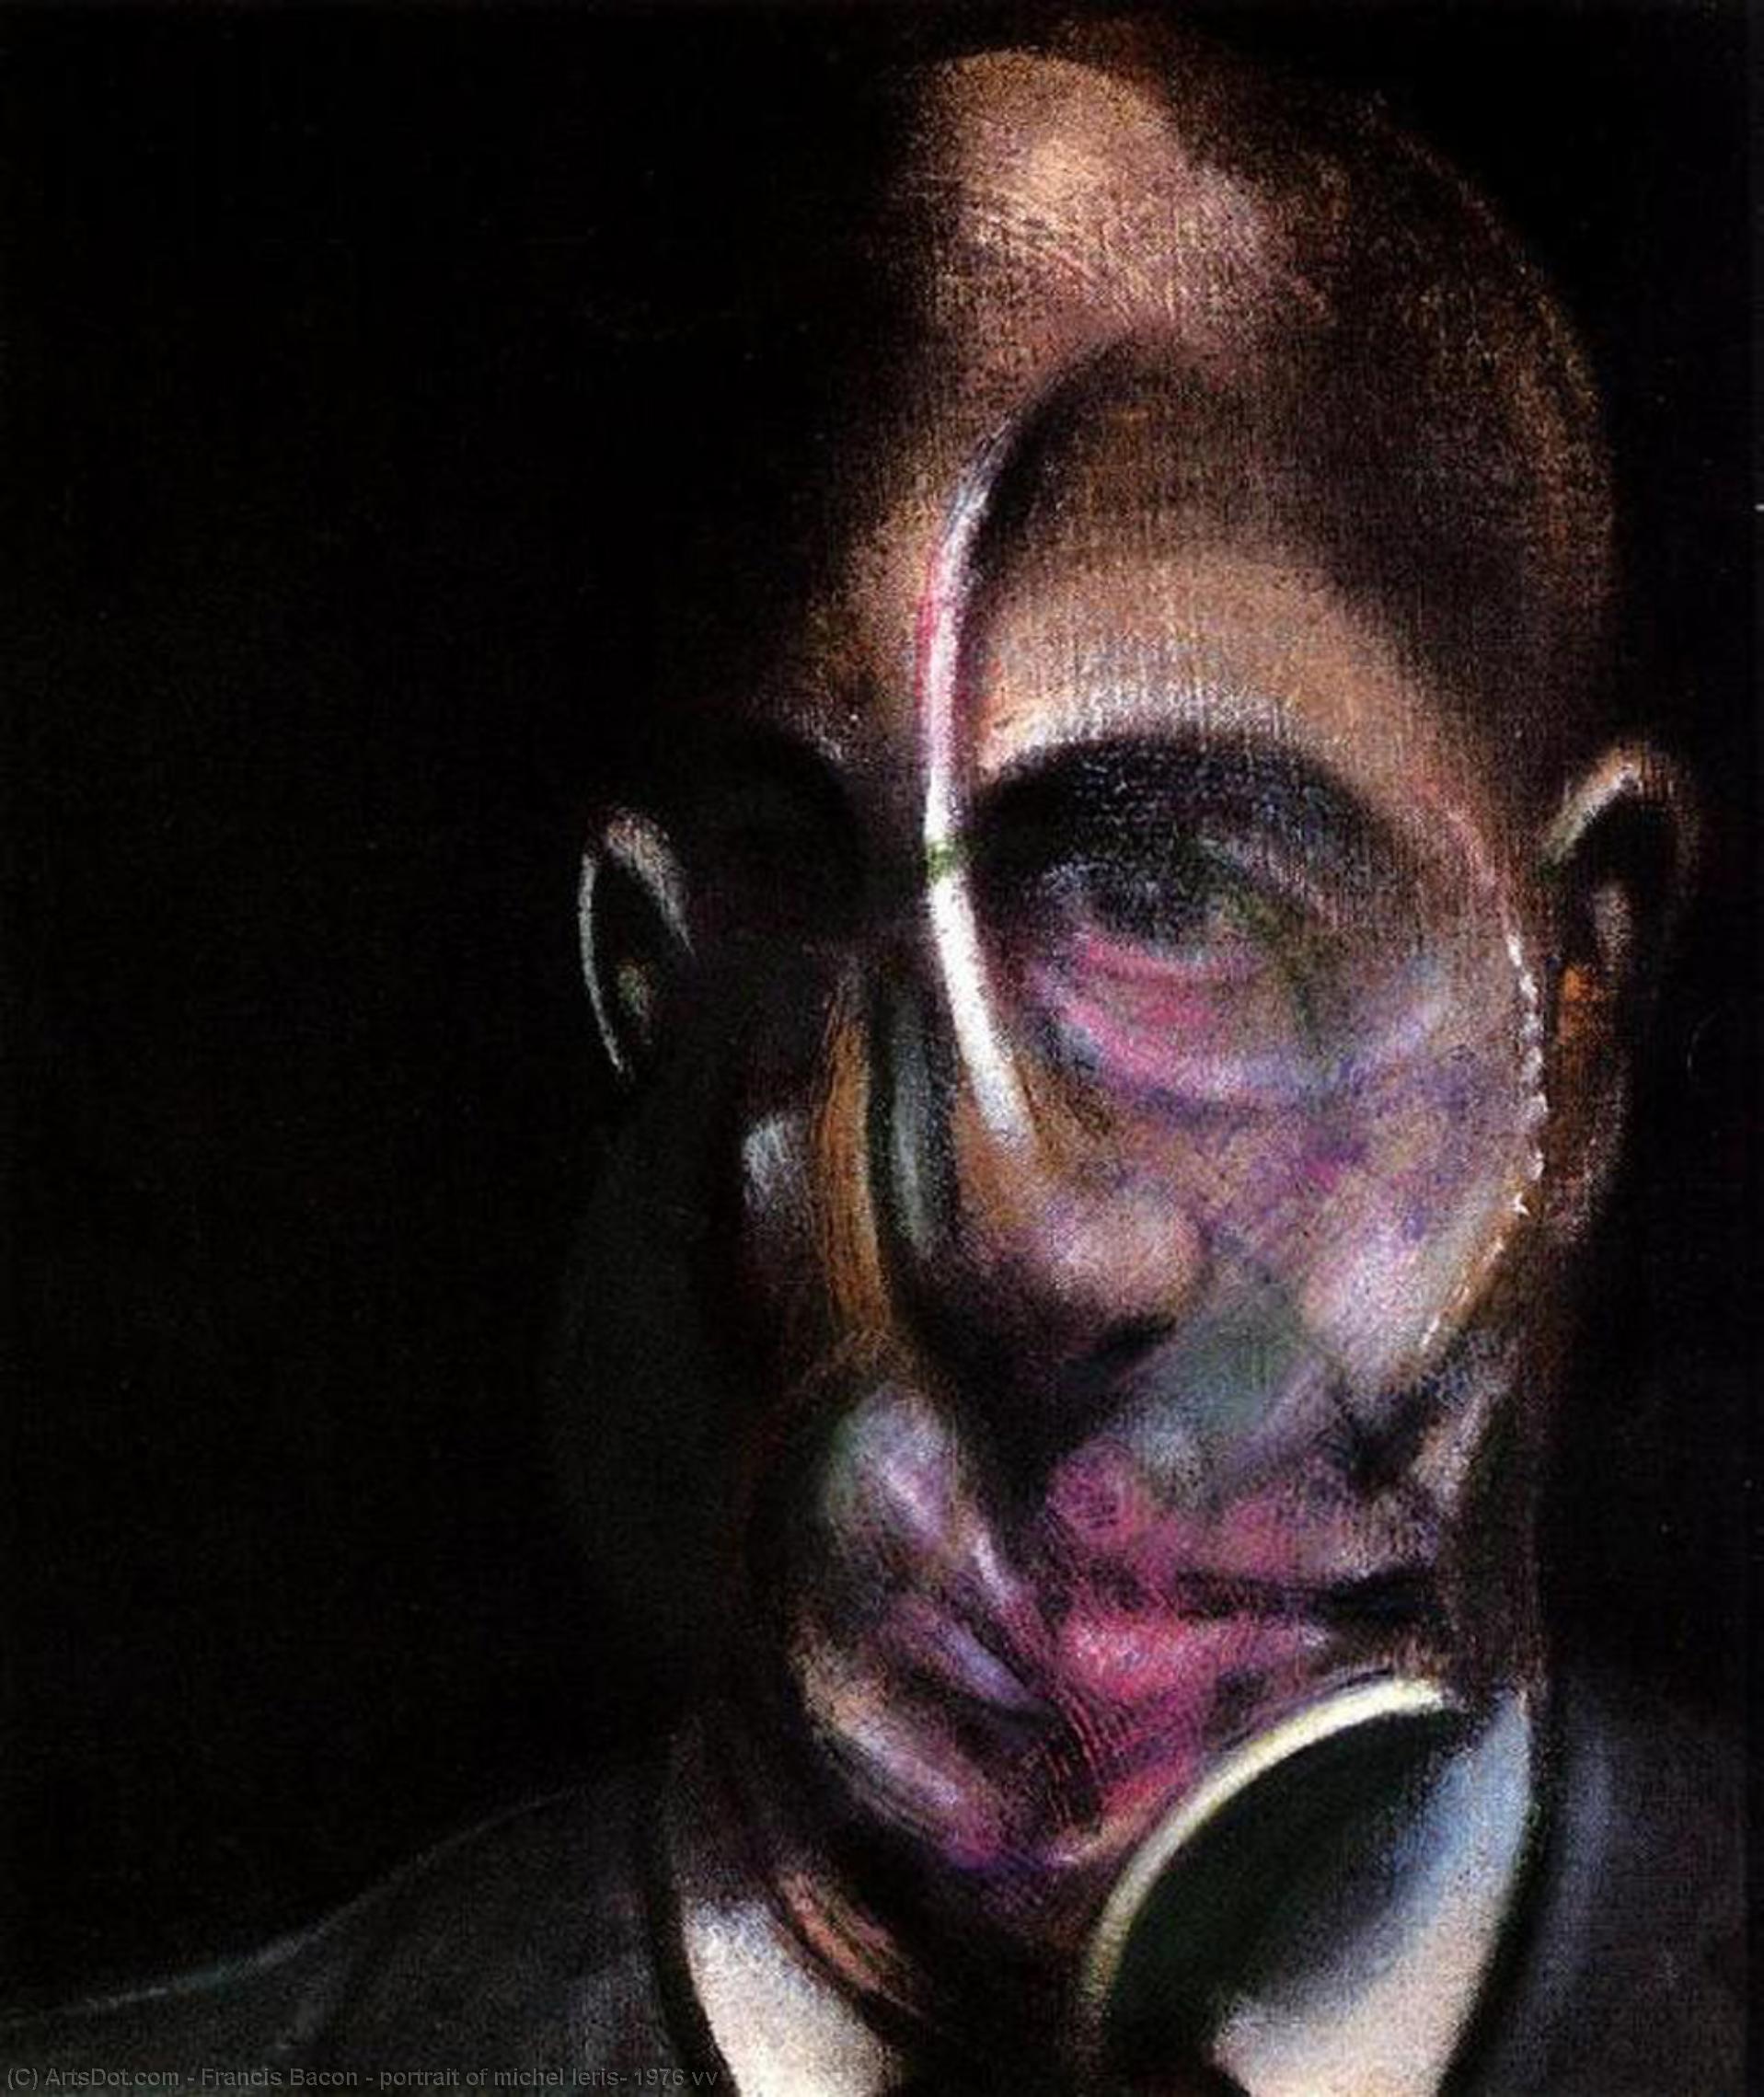 Wikoo.org - موسوعة الفنون الجميلة - اللوحة، العمل الفني Francis Bacon - portrait of michel leris, 1976 vv